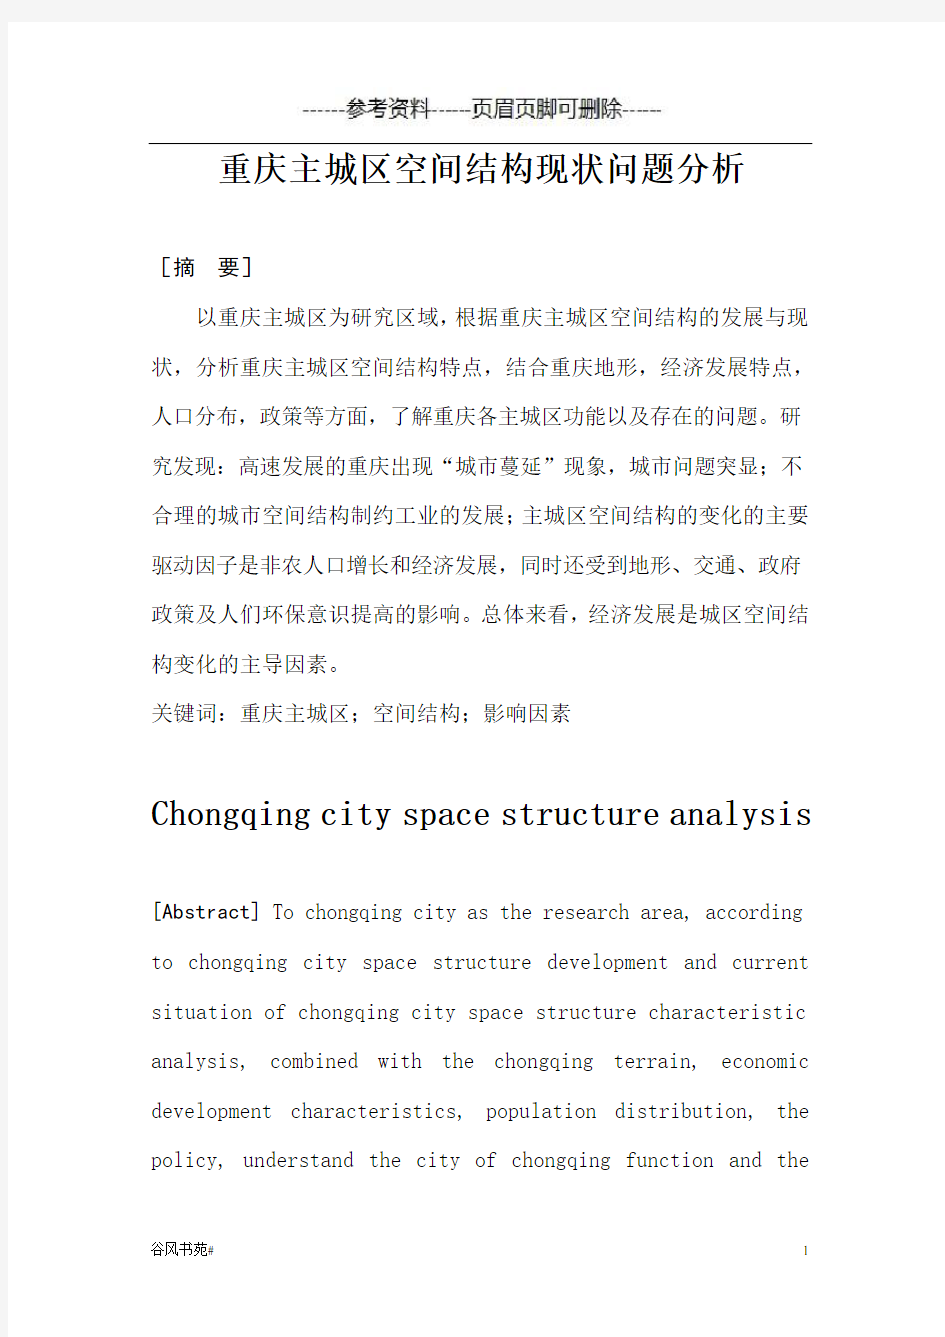 重庆主城区空间结构分析(知识分析)